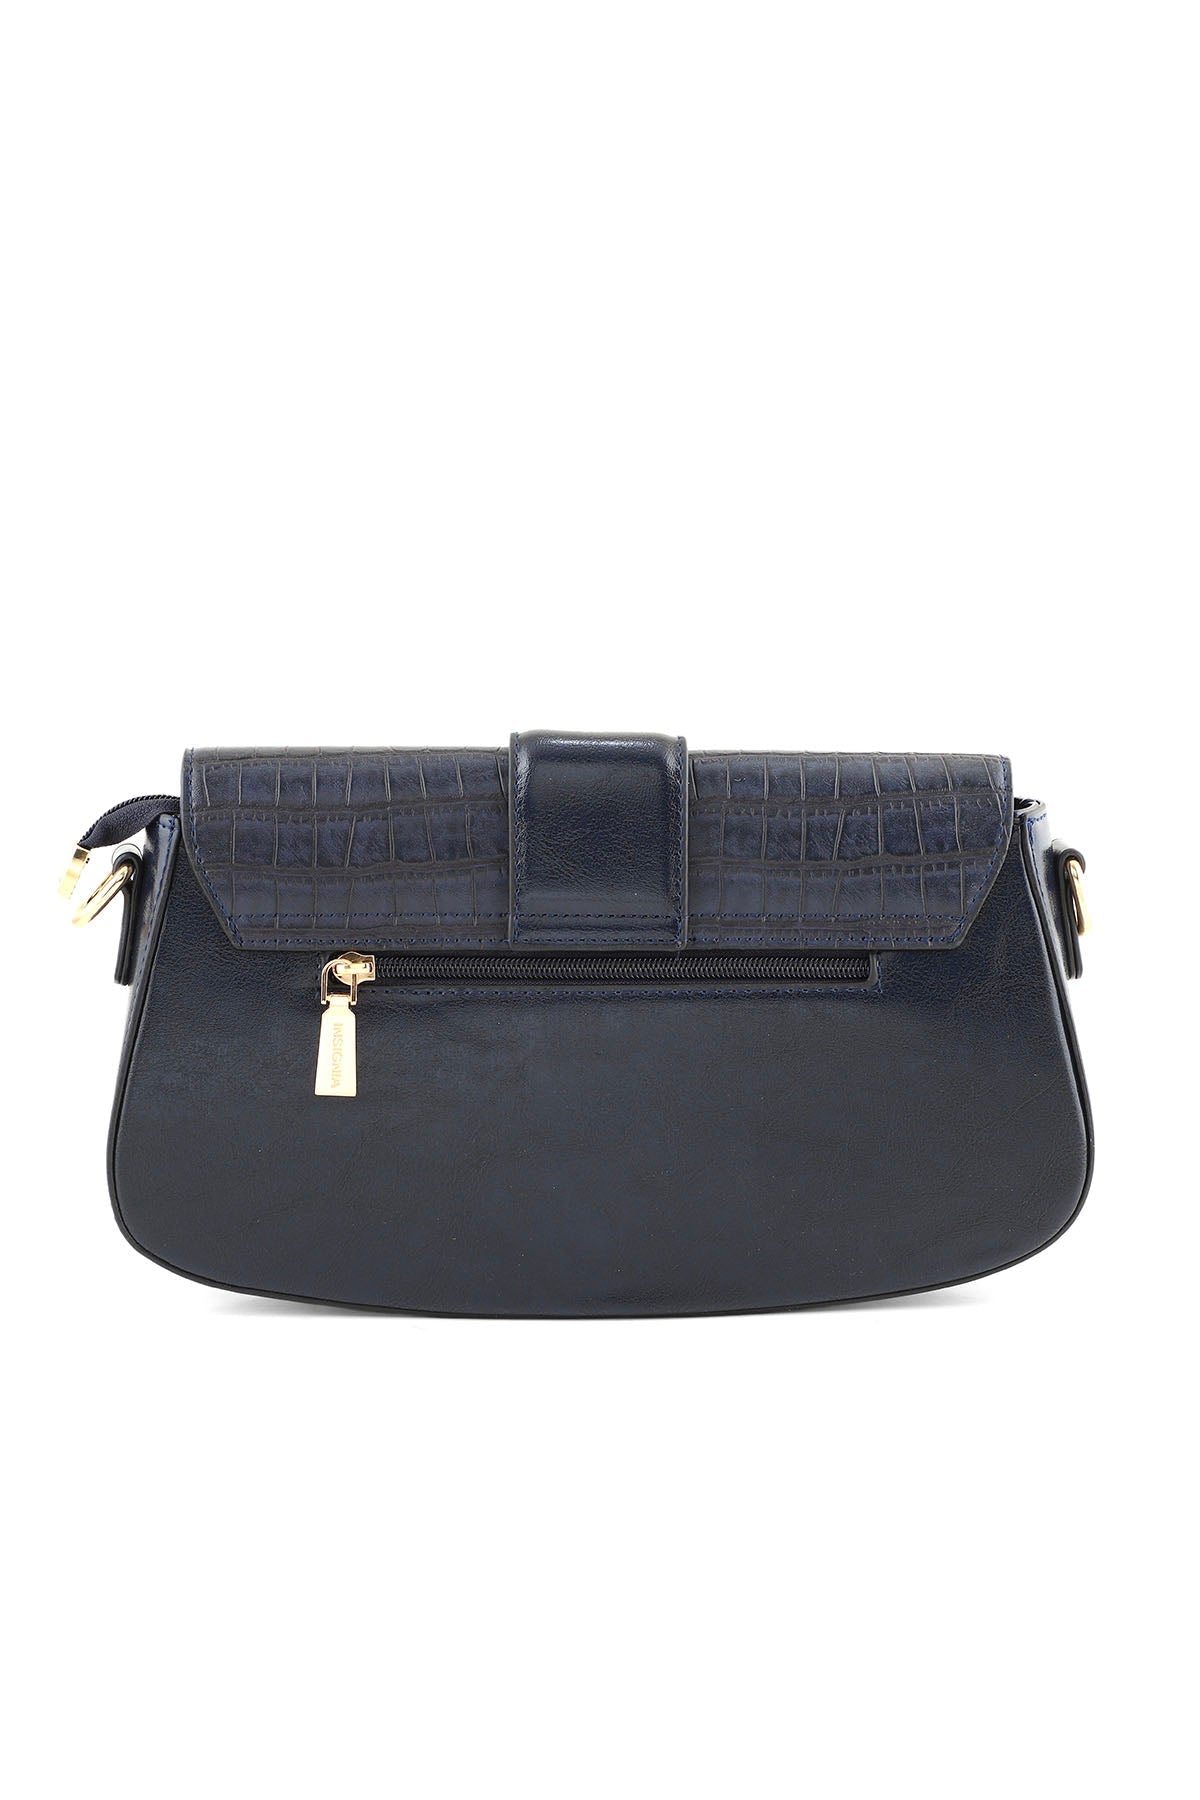 Baguette Shoulder Bags B14975-Blue